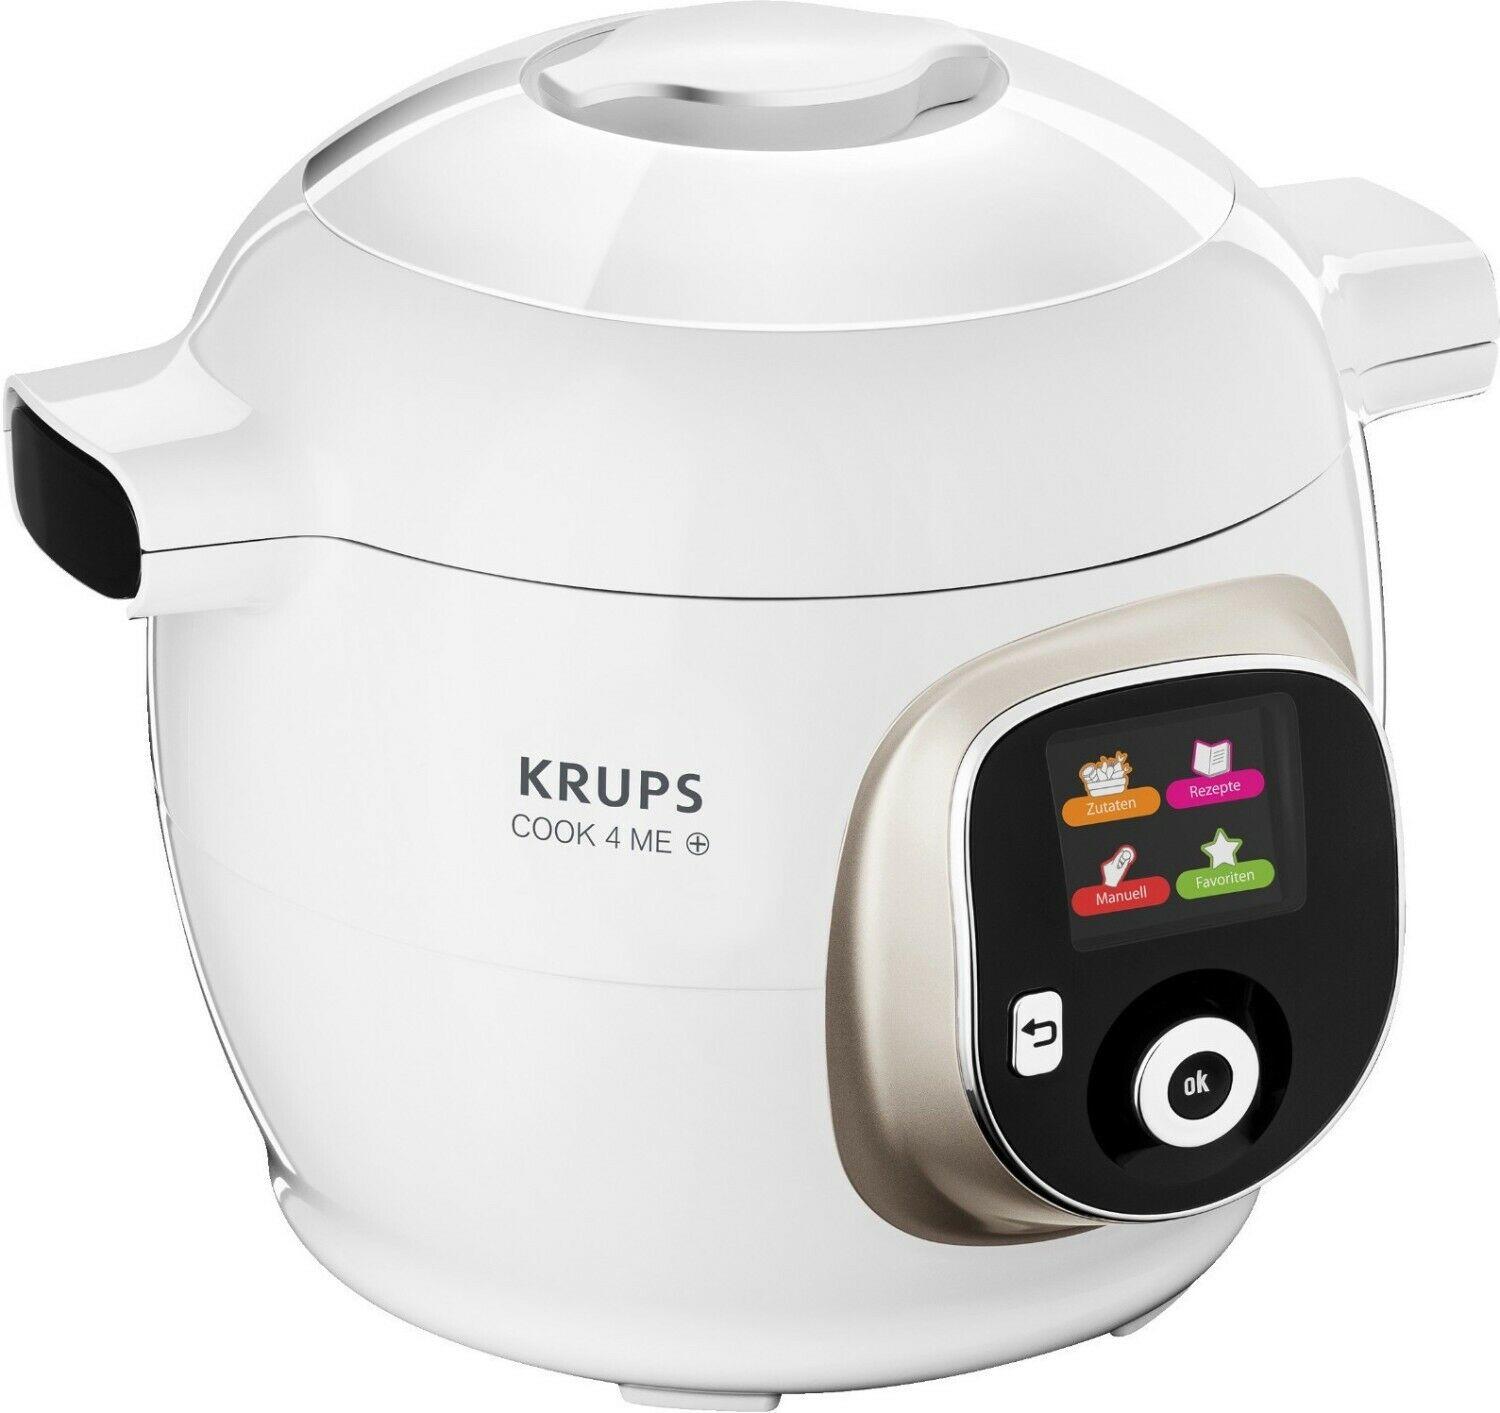 Read more about the article Krups Multikocher Cook4me von Aldi im Test! Hier günstig kaufen